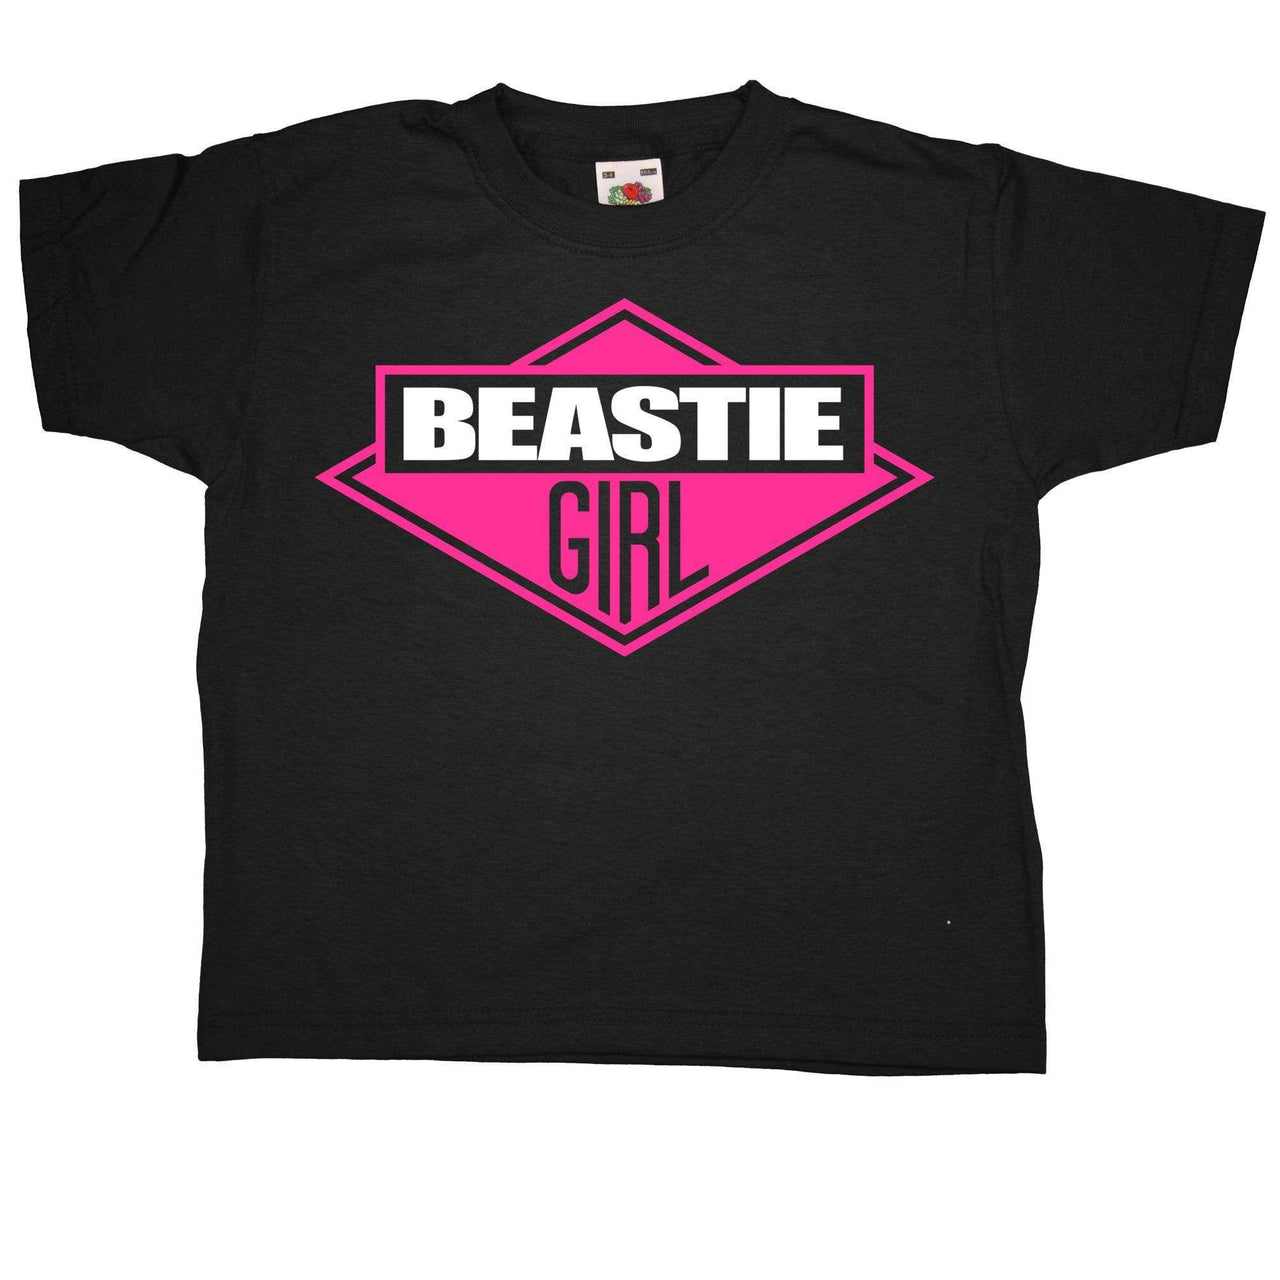 Beastie Girl Kids T-Shirt - 8Ball Kids T-Shirt